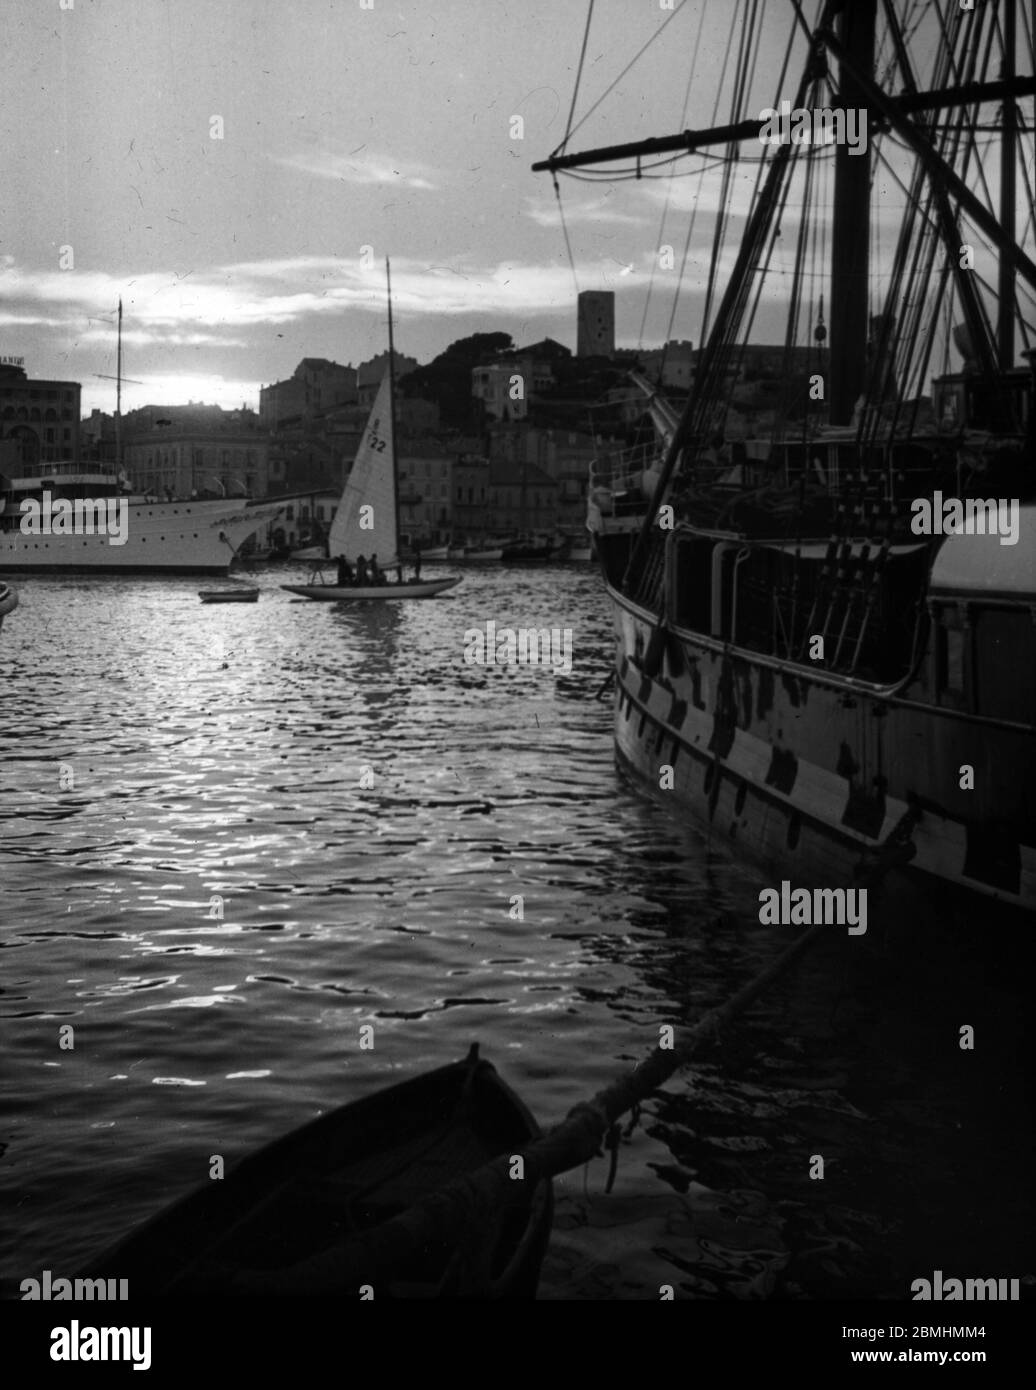 Coulcher de soleil sur le port de Cannes, voilier et yacht, Alpes Maritimes, juillet 1939 (veille de la deuxieme guerre mondiale) Fotografie anonime Foto Stock